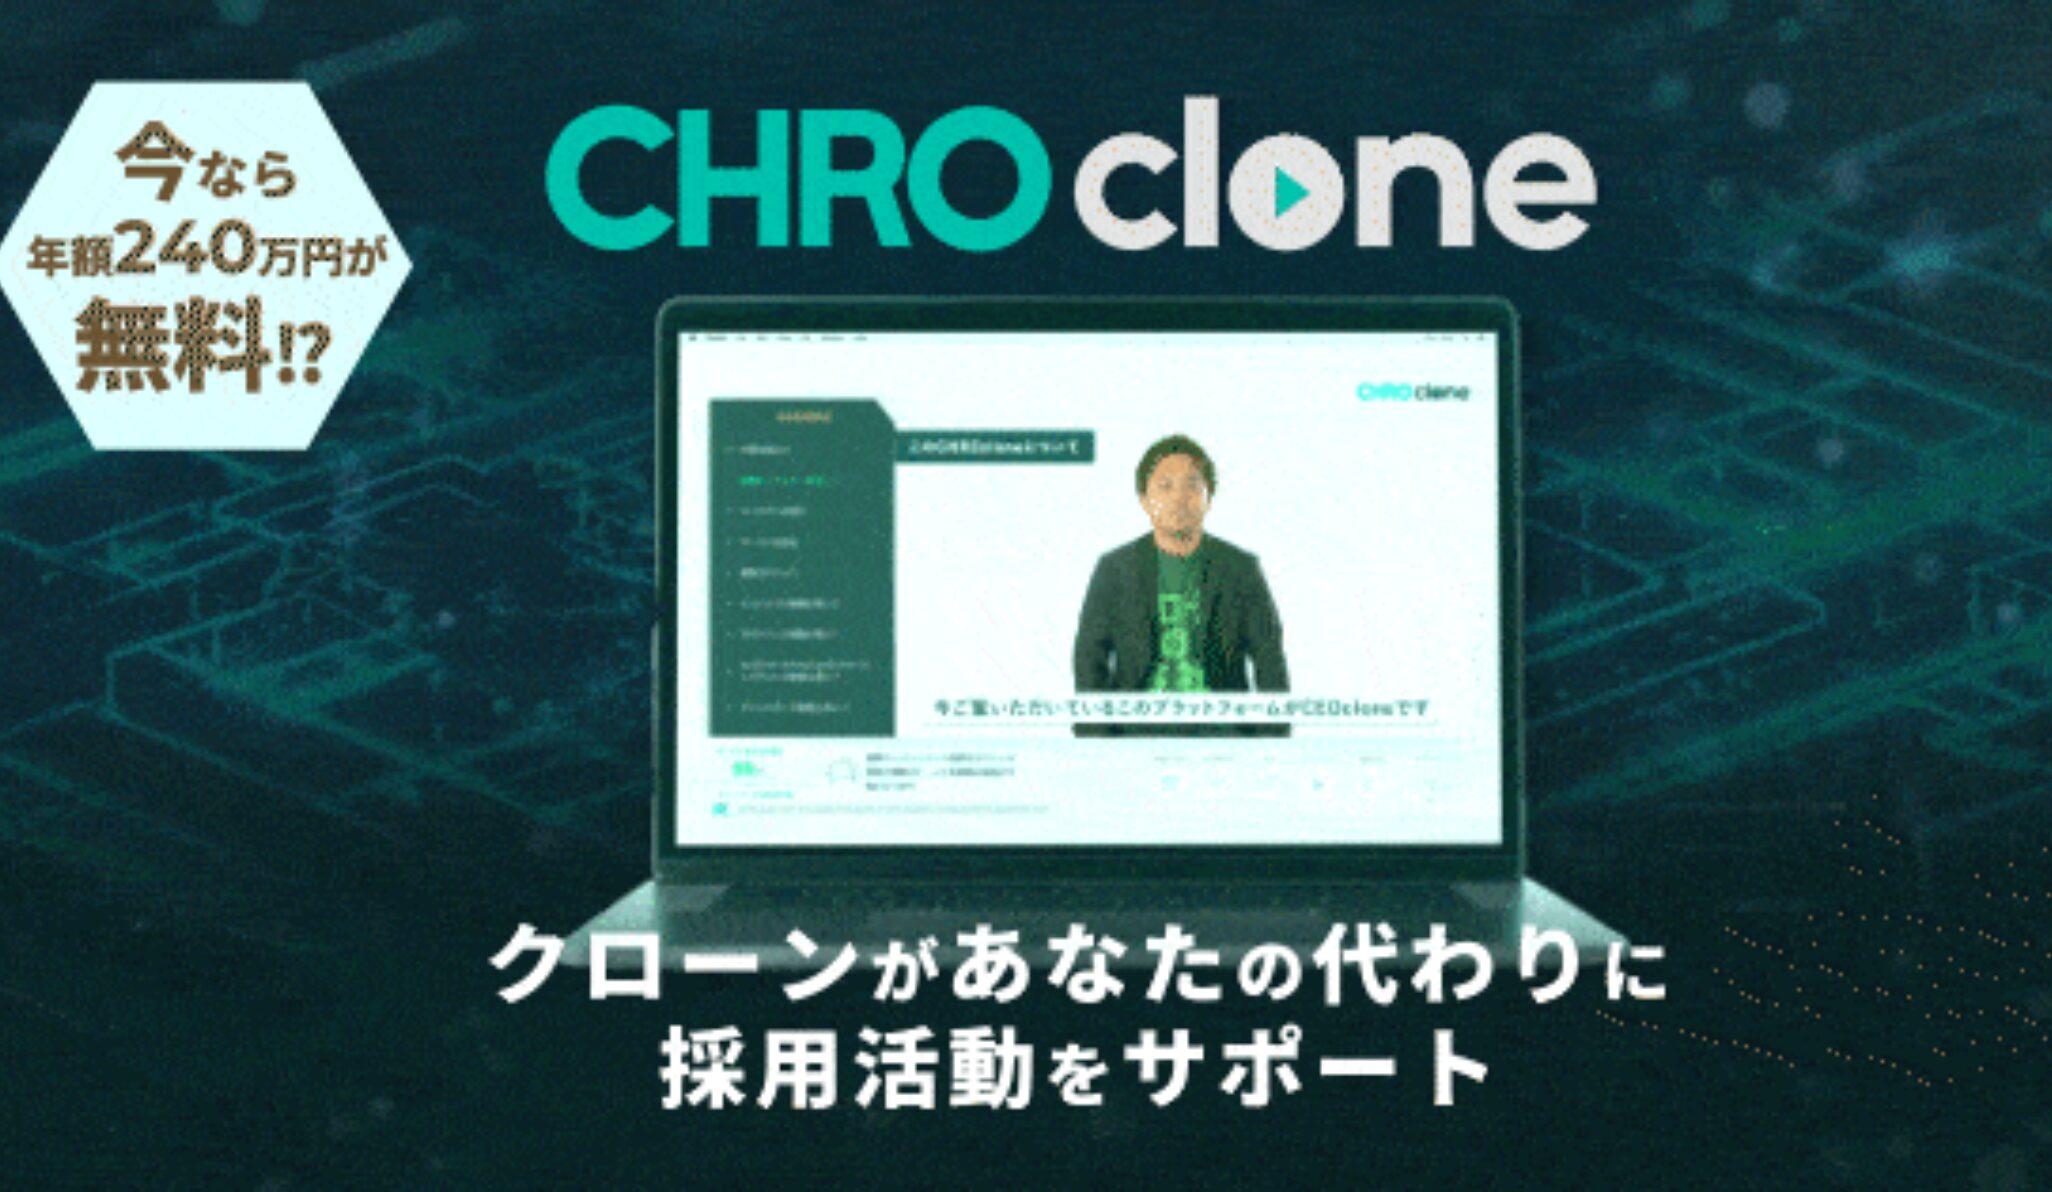 大応援しているタッチスポット社が採用DXサービス『CHROclone』をリリース